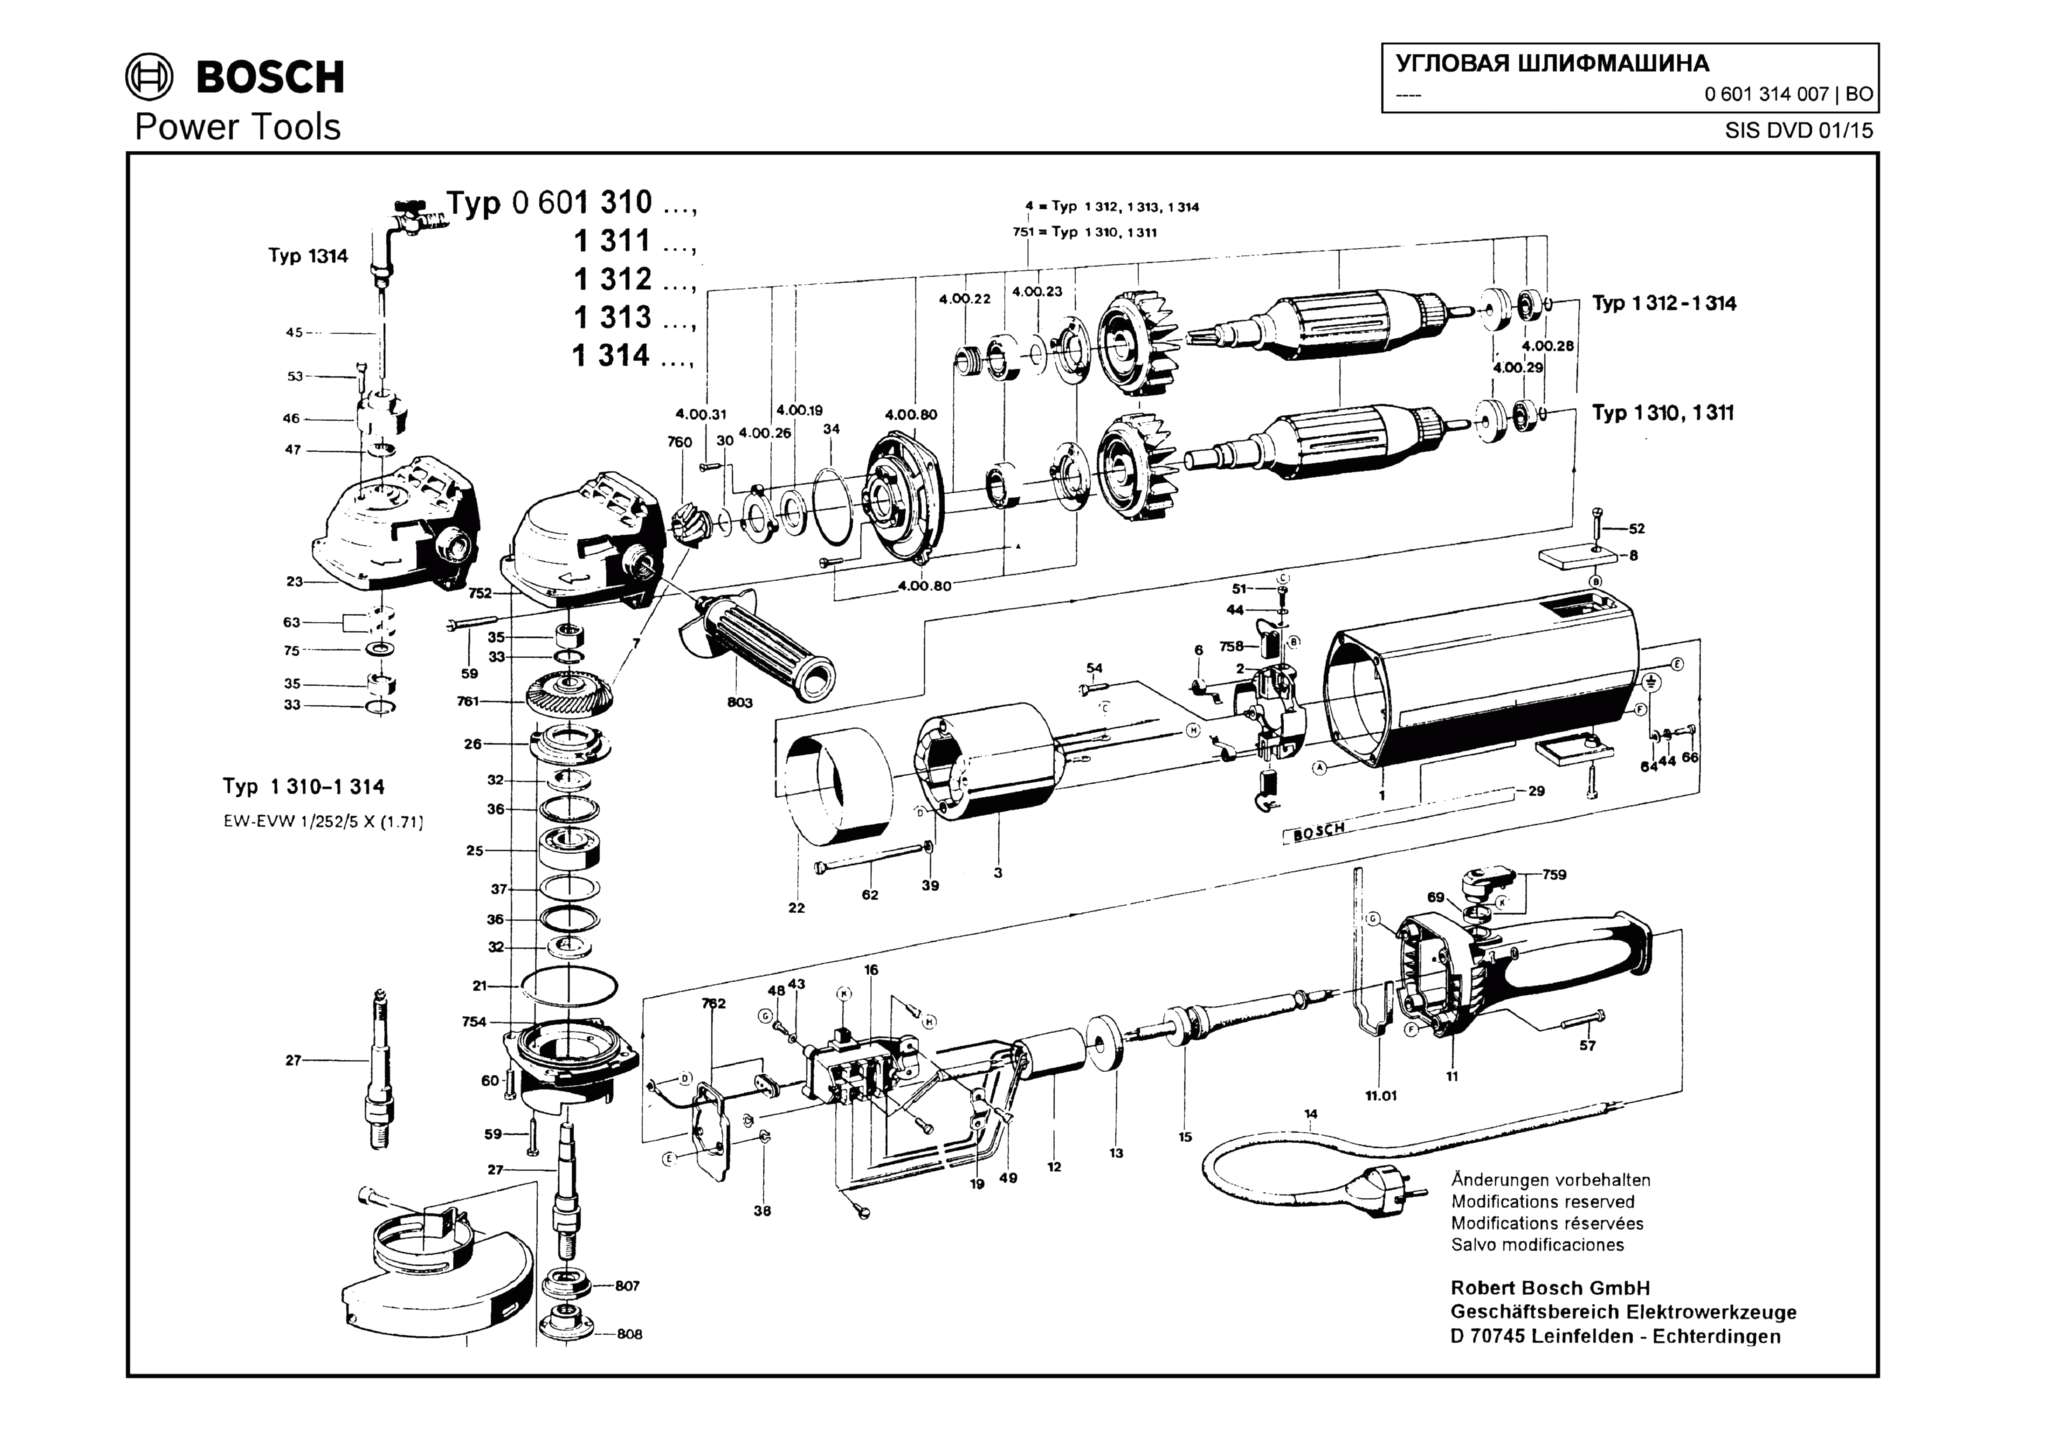 Запчасти, схема и деталировка Bosch (ТИП 0601314007)